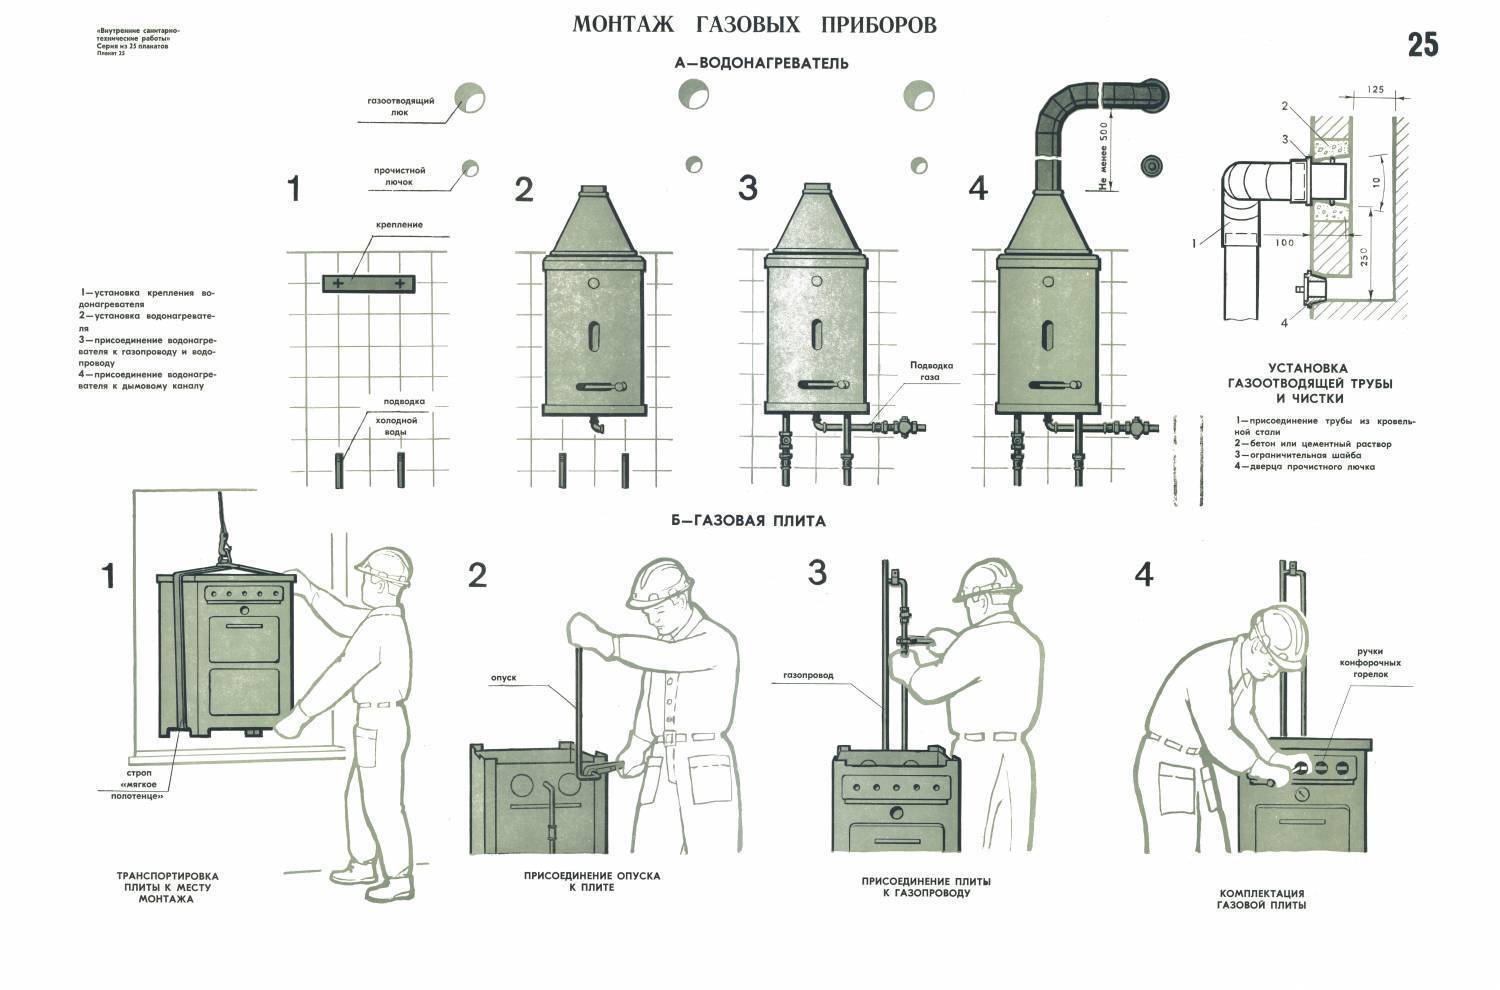 Правила установки газовых колонок в квартирах - только ремонт своими руками в квартире: фото, видео, инструкции